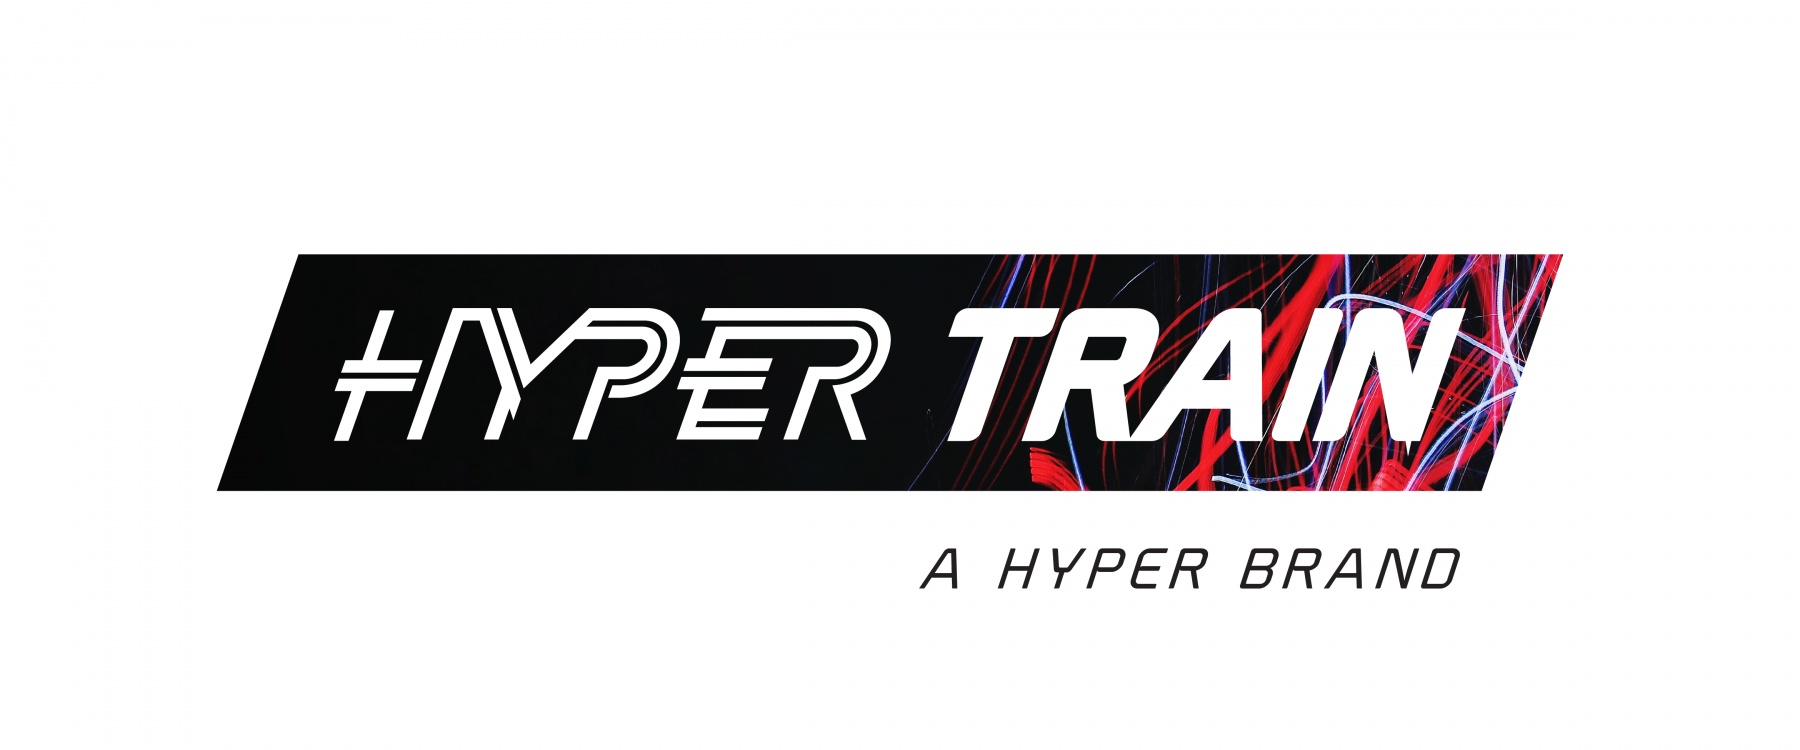 Hyper Brands 01